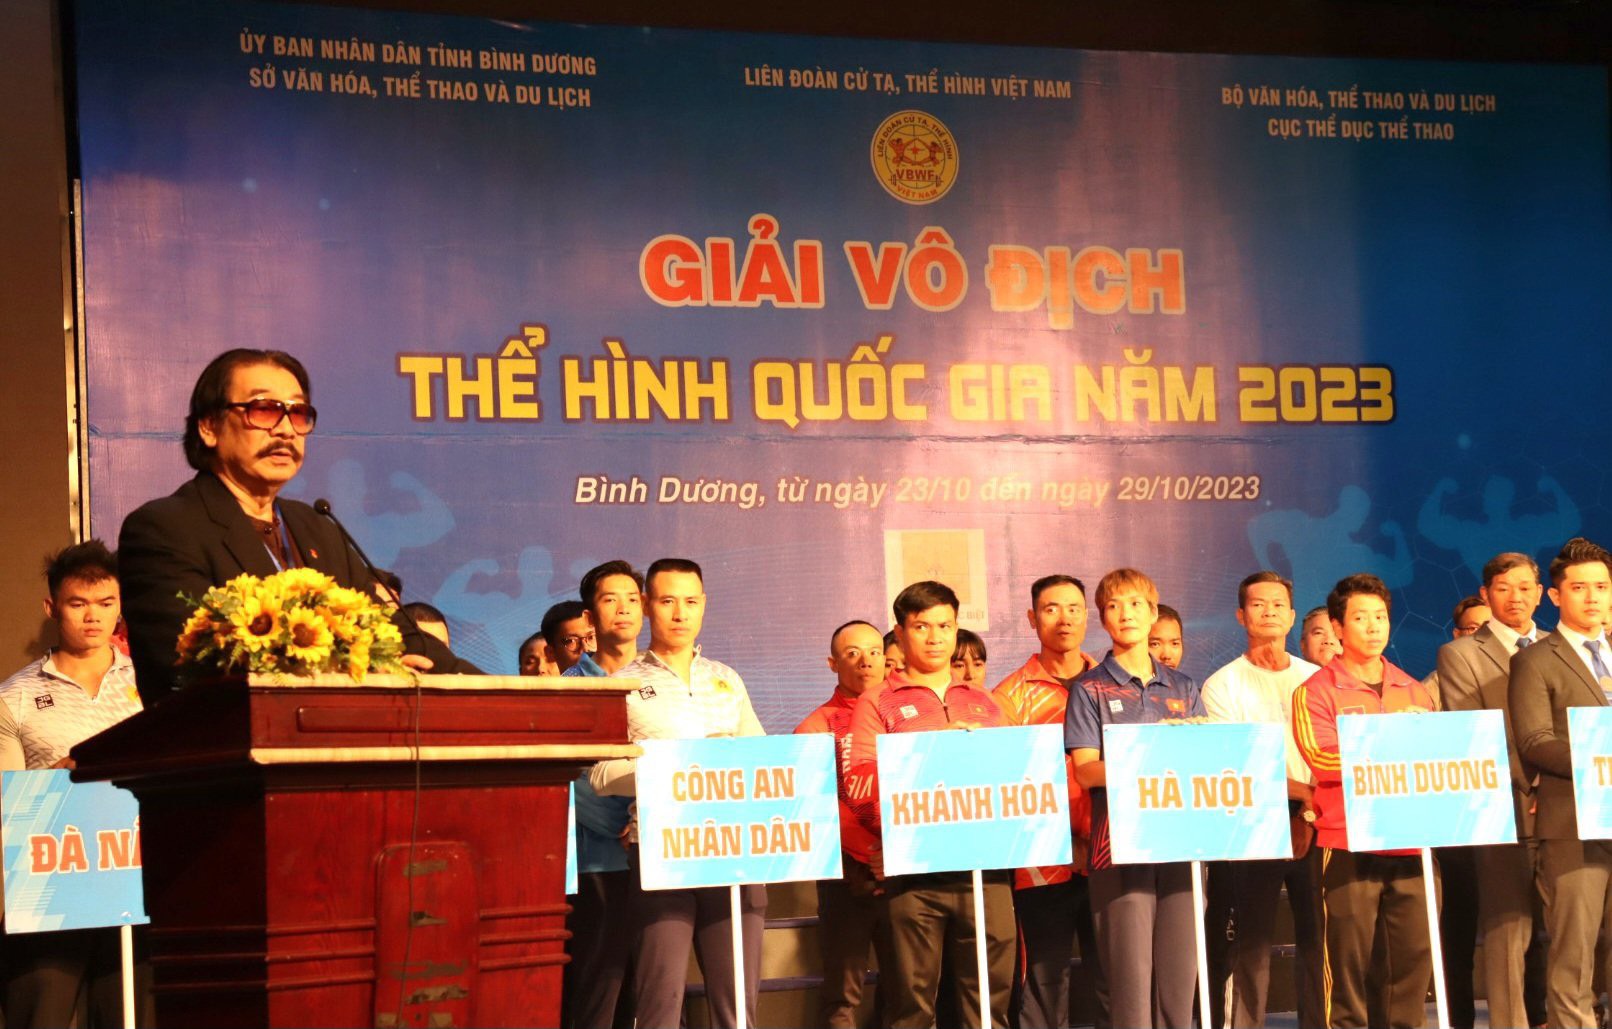 Ông Nguyễn Hồng Minh – Phó Chủ tịch thường trực Liên đoàn Cử tạ, Thể hình Việt Nam, Phó Trưởng BTC giải phát biểu khai mạc giải